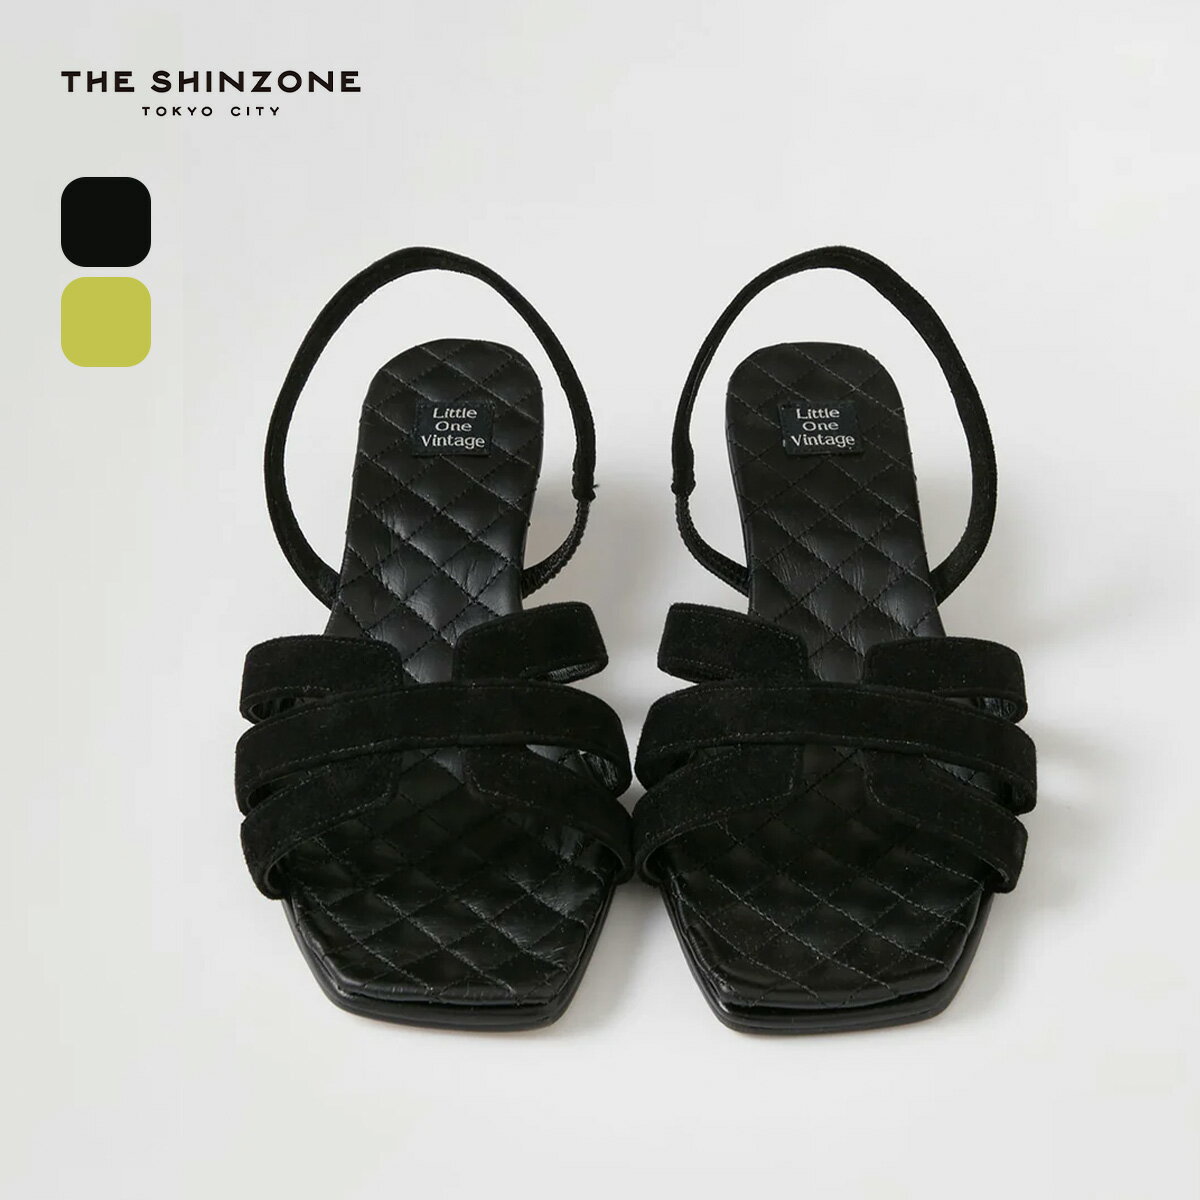 ザ シンゾーン パーシーズサンダル THE SHINZONE PISCES SANDALS レディース 22MLVSH01 靴 サンダル アウトドア フェス キャンプ 【正規品】